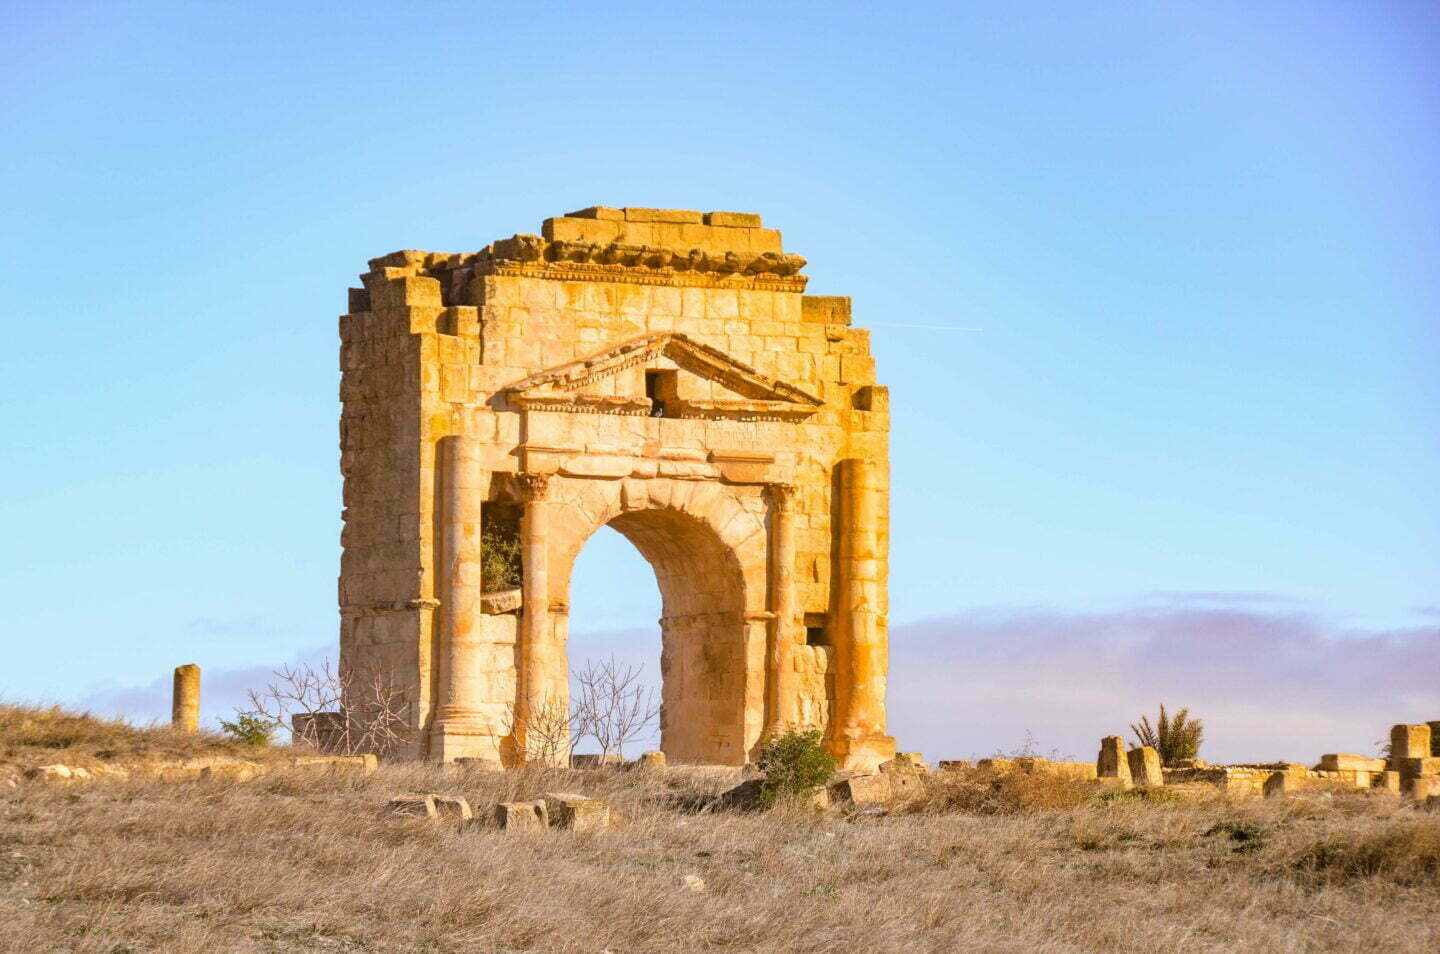 Tunesien - Makthar, eine unruhige Nacht und eine numidische Stadt voller römischer Überreste